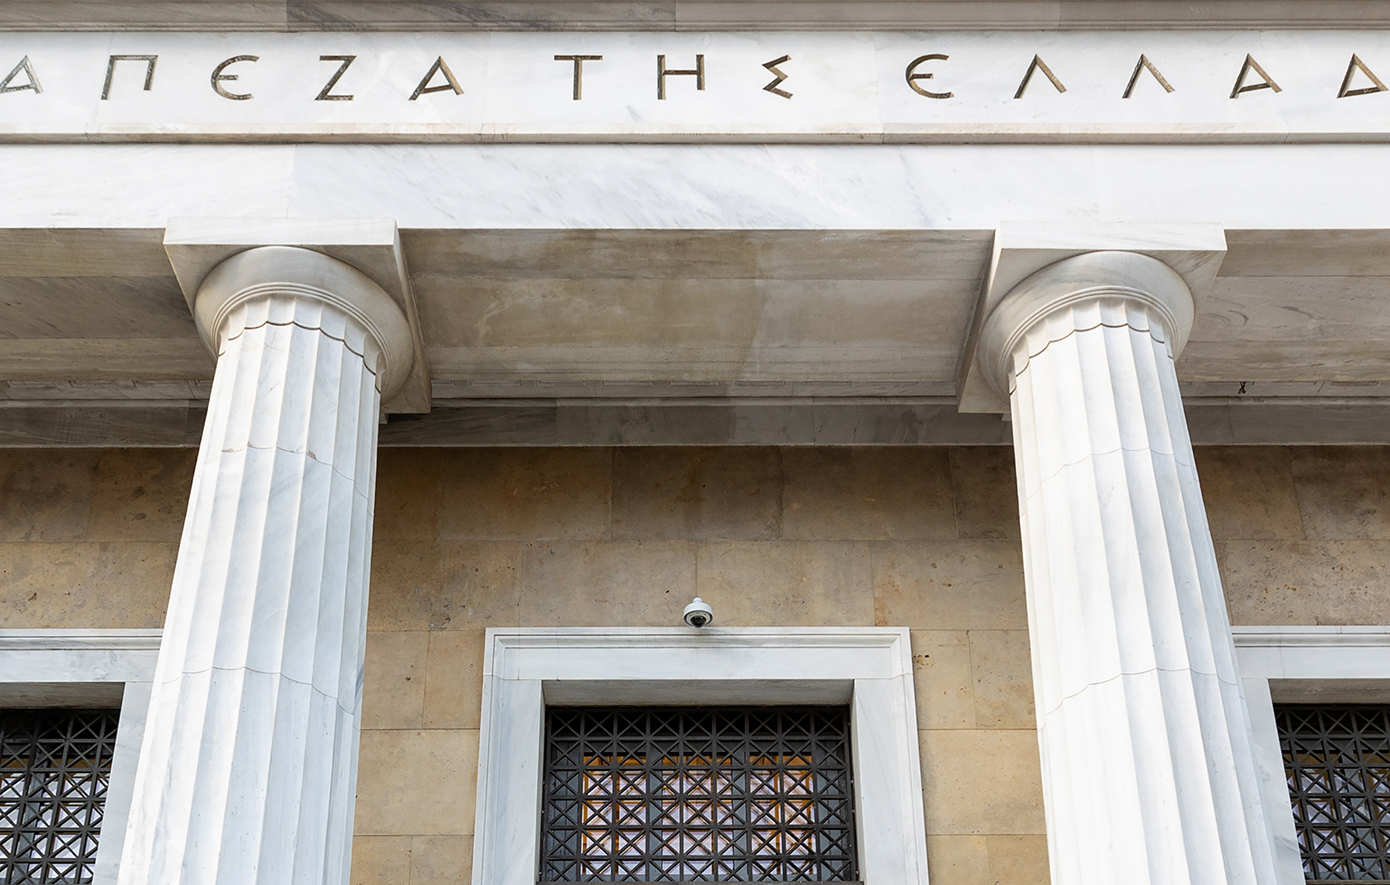 Πλαφόν στο ύψος των στεγαστικών δανείων βάζει η Τράπεζα της Ελλάδος